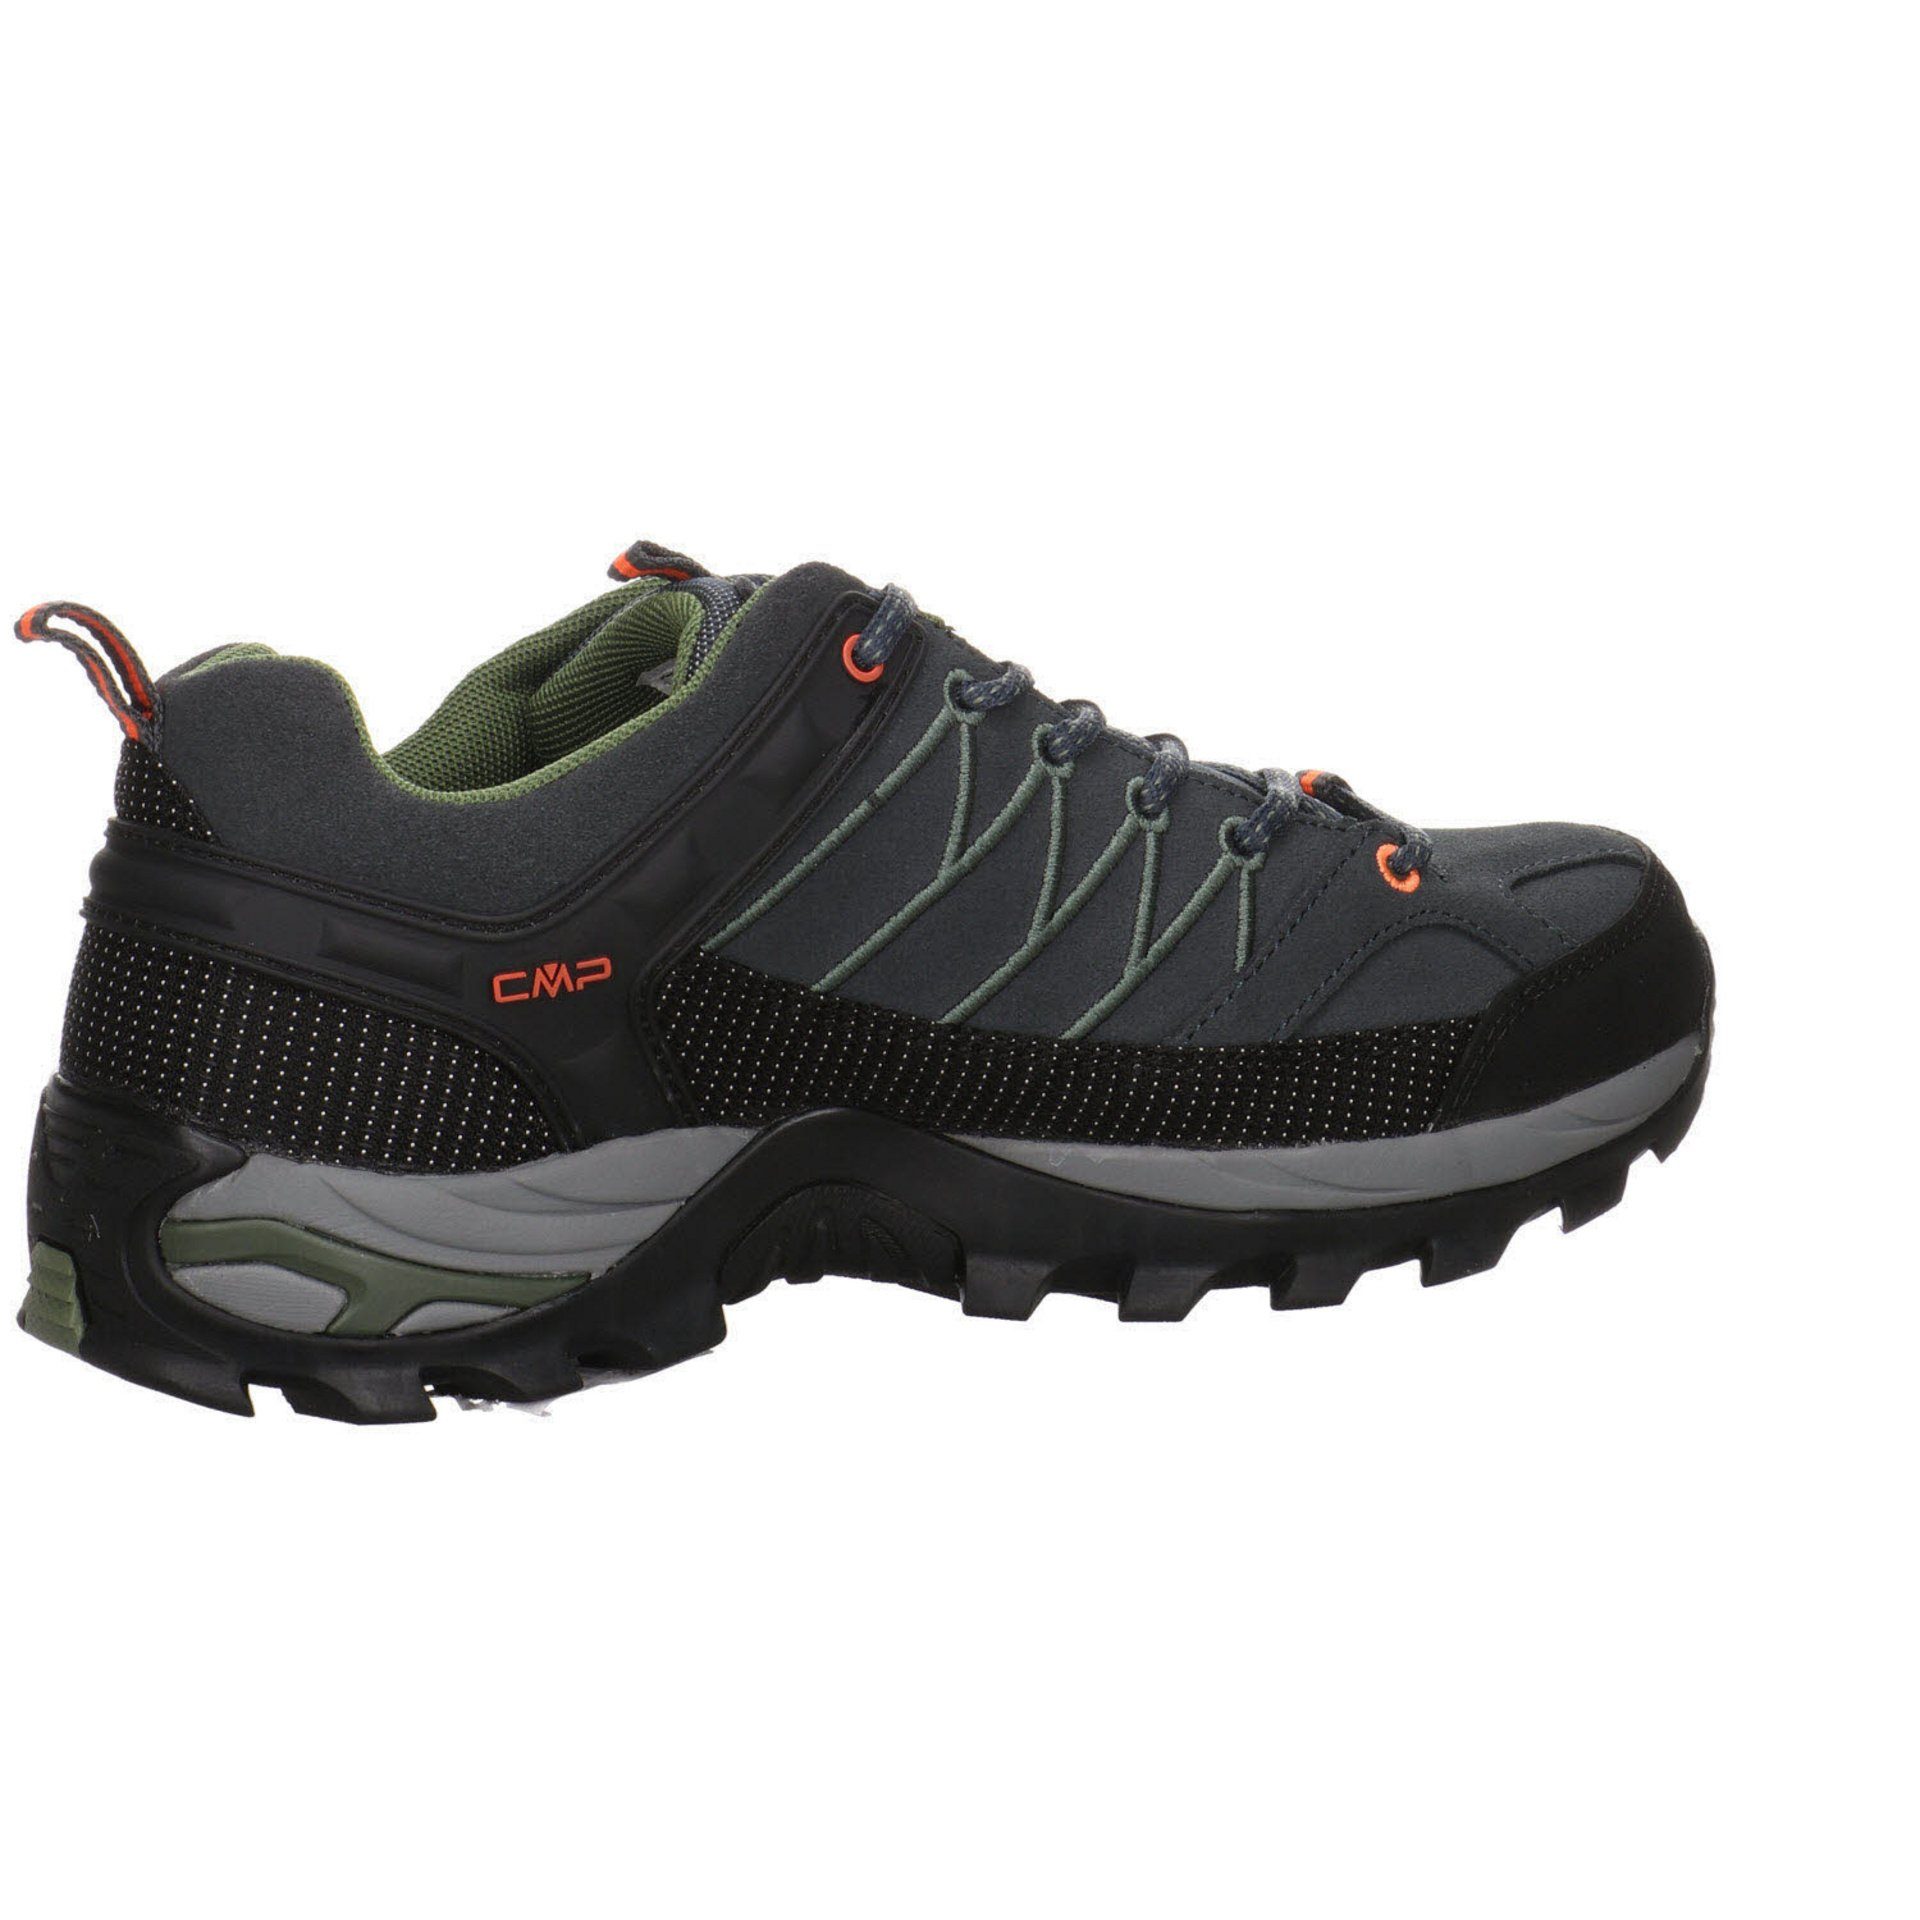 CMP Herren Outdoor Low Schuhe Grau Leder-/Textilkombination Rigel Outdoorschuh Outdoorschuh (03201805)